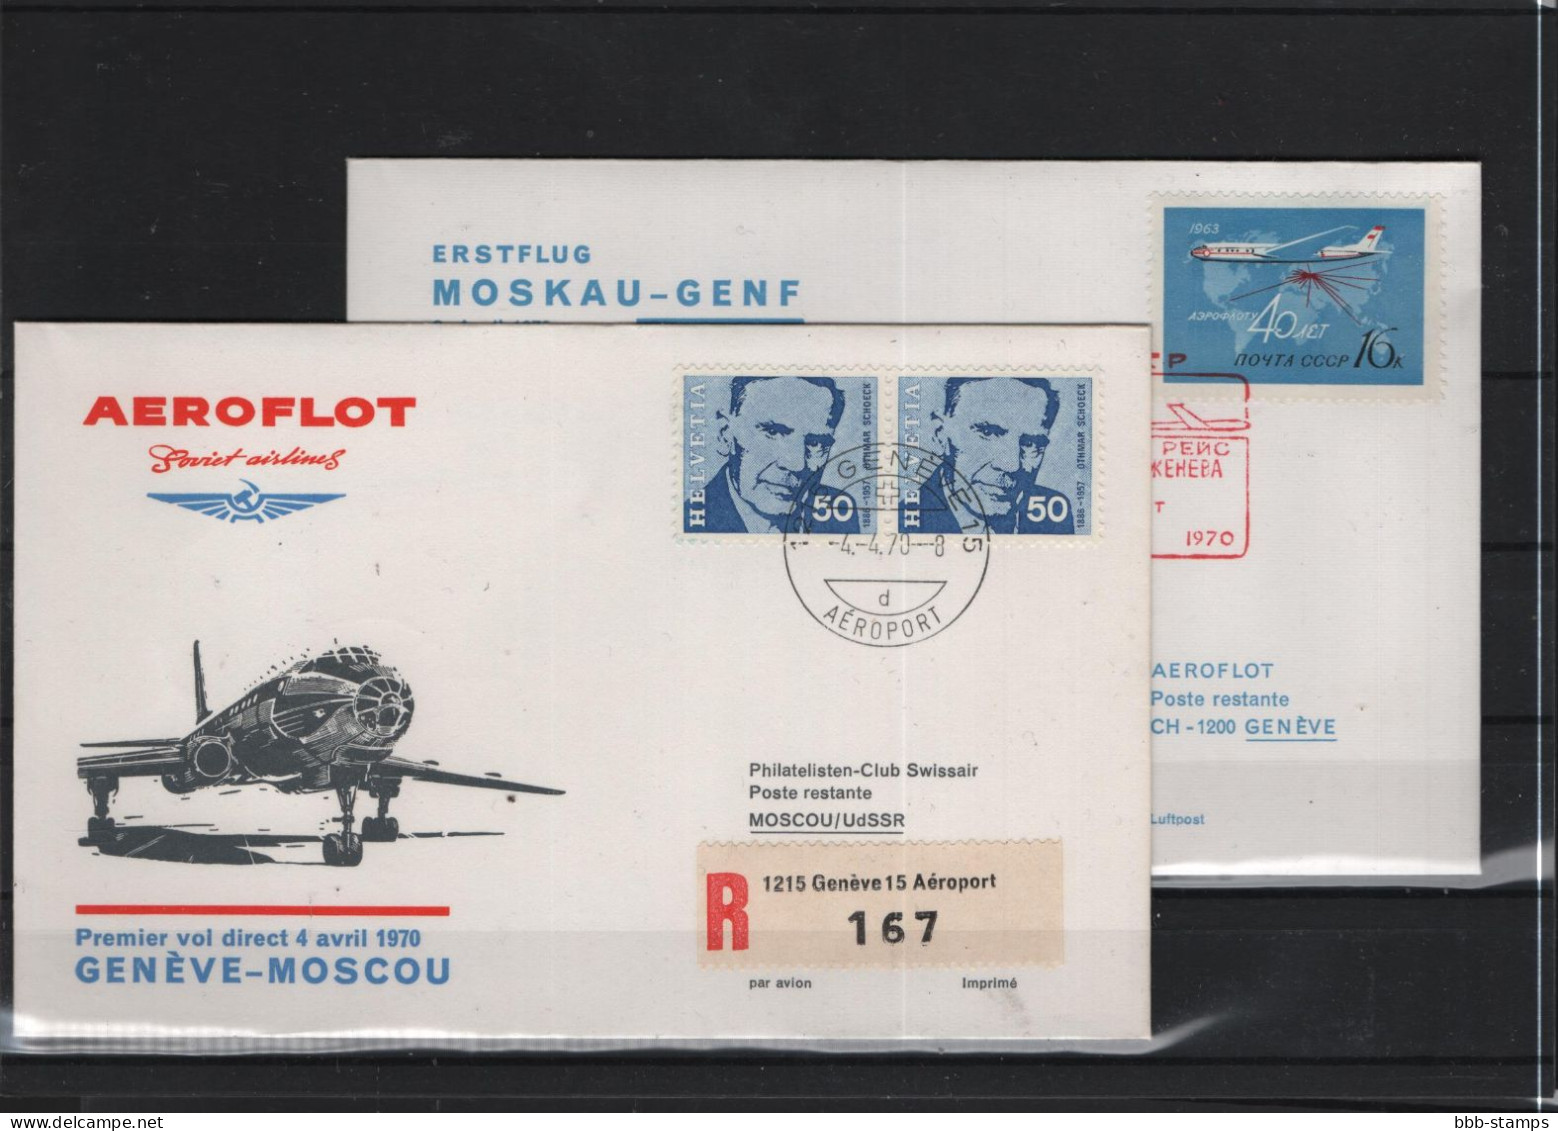 Schweiz Luftpost FFC Aeroflot 3.4.1970 Genf - Moskau VV - Premiers Vols